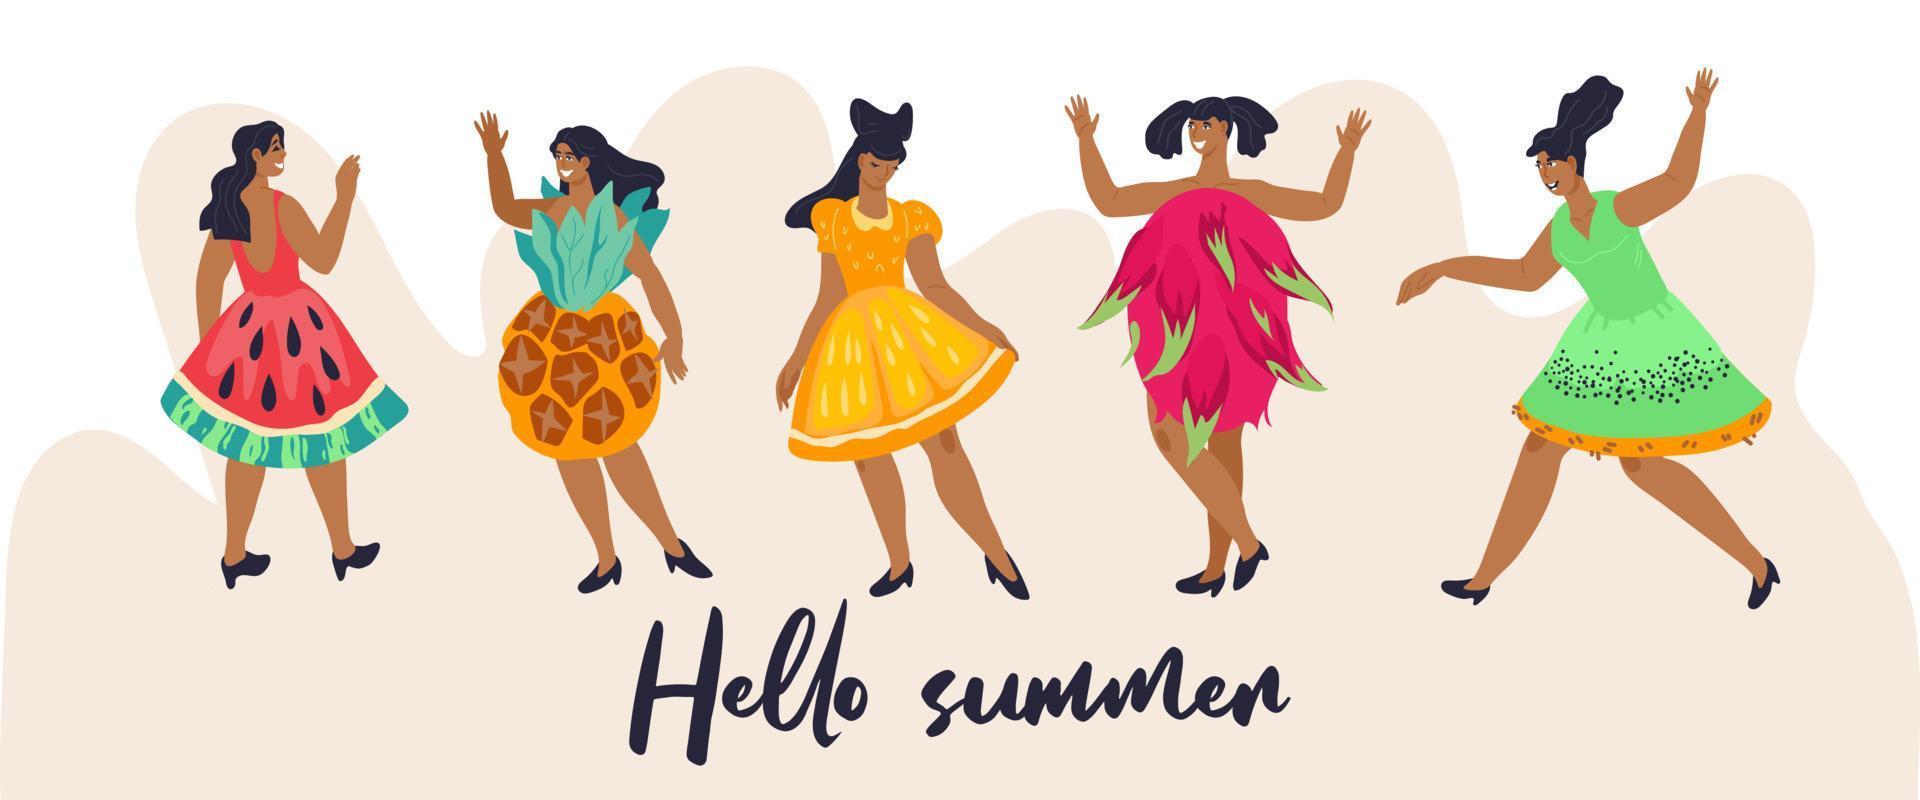 sommar fest baner eller affisch design mall med fantasi klädd som tropisk frukt kvinnor. inbjudan bakgrund för Hej sommar - säsong och semester början evenemang. platt vektor illustration.